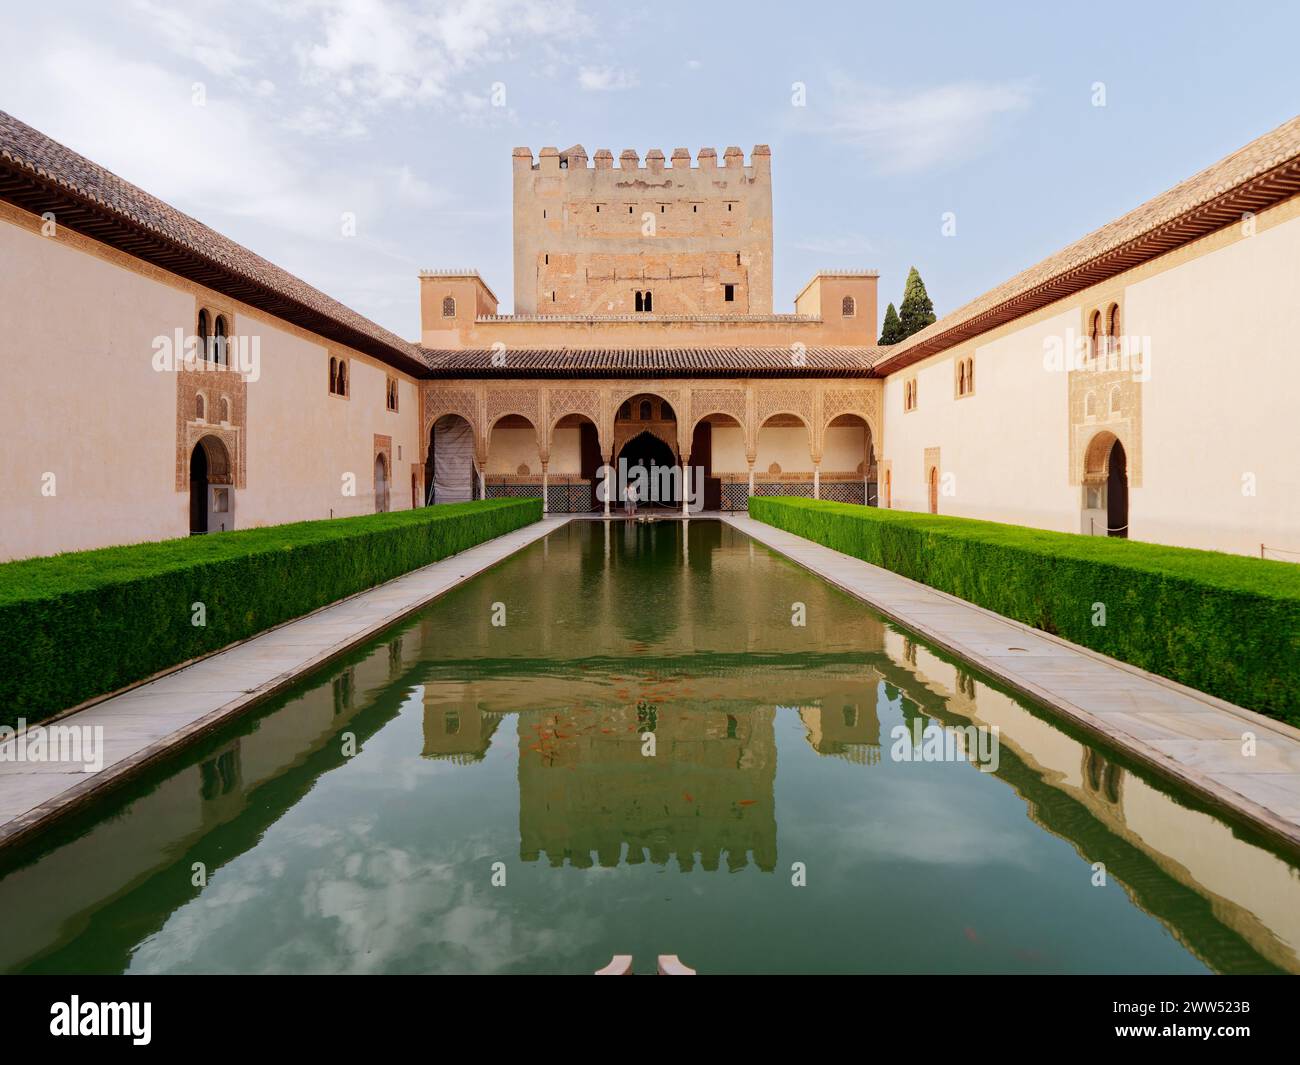 Nasridenpaläste, Alhambra Granada. Detaillierte Handwerkskunst der maurischen Architektur. Unesco-Weltkulturerbe Spanien. Reisen Sie in die Zeit und entdecken Sie die Geschichte. Stockfoto